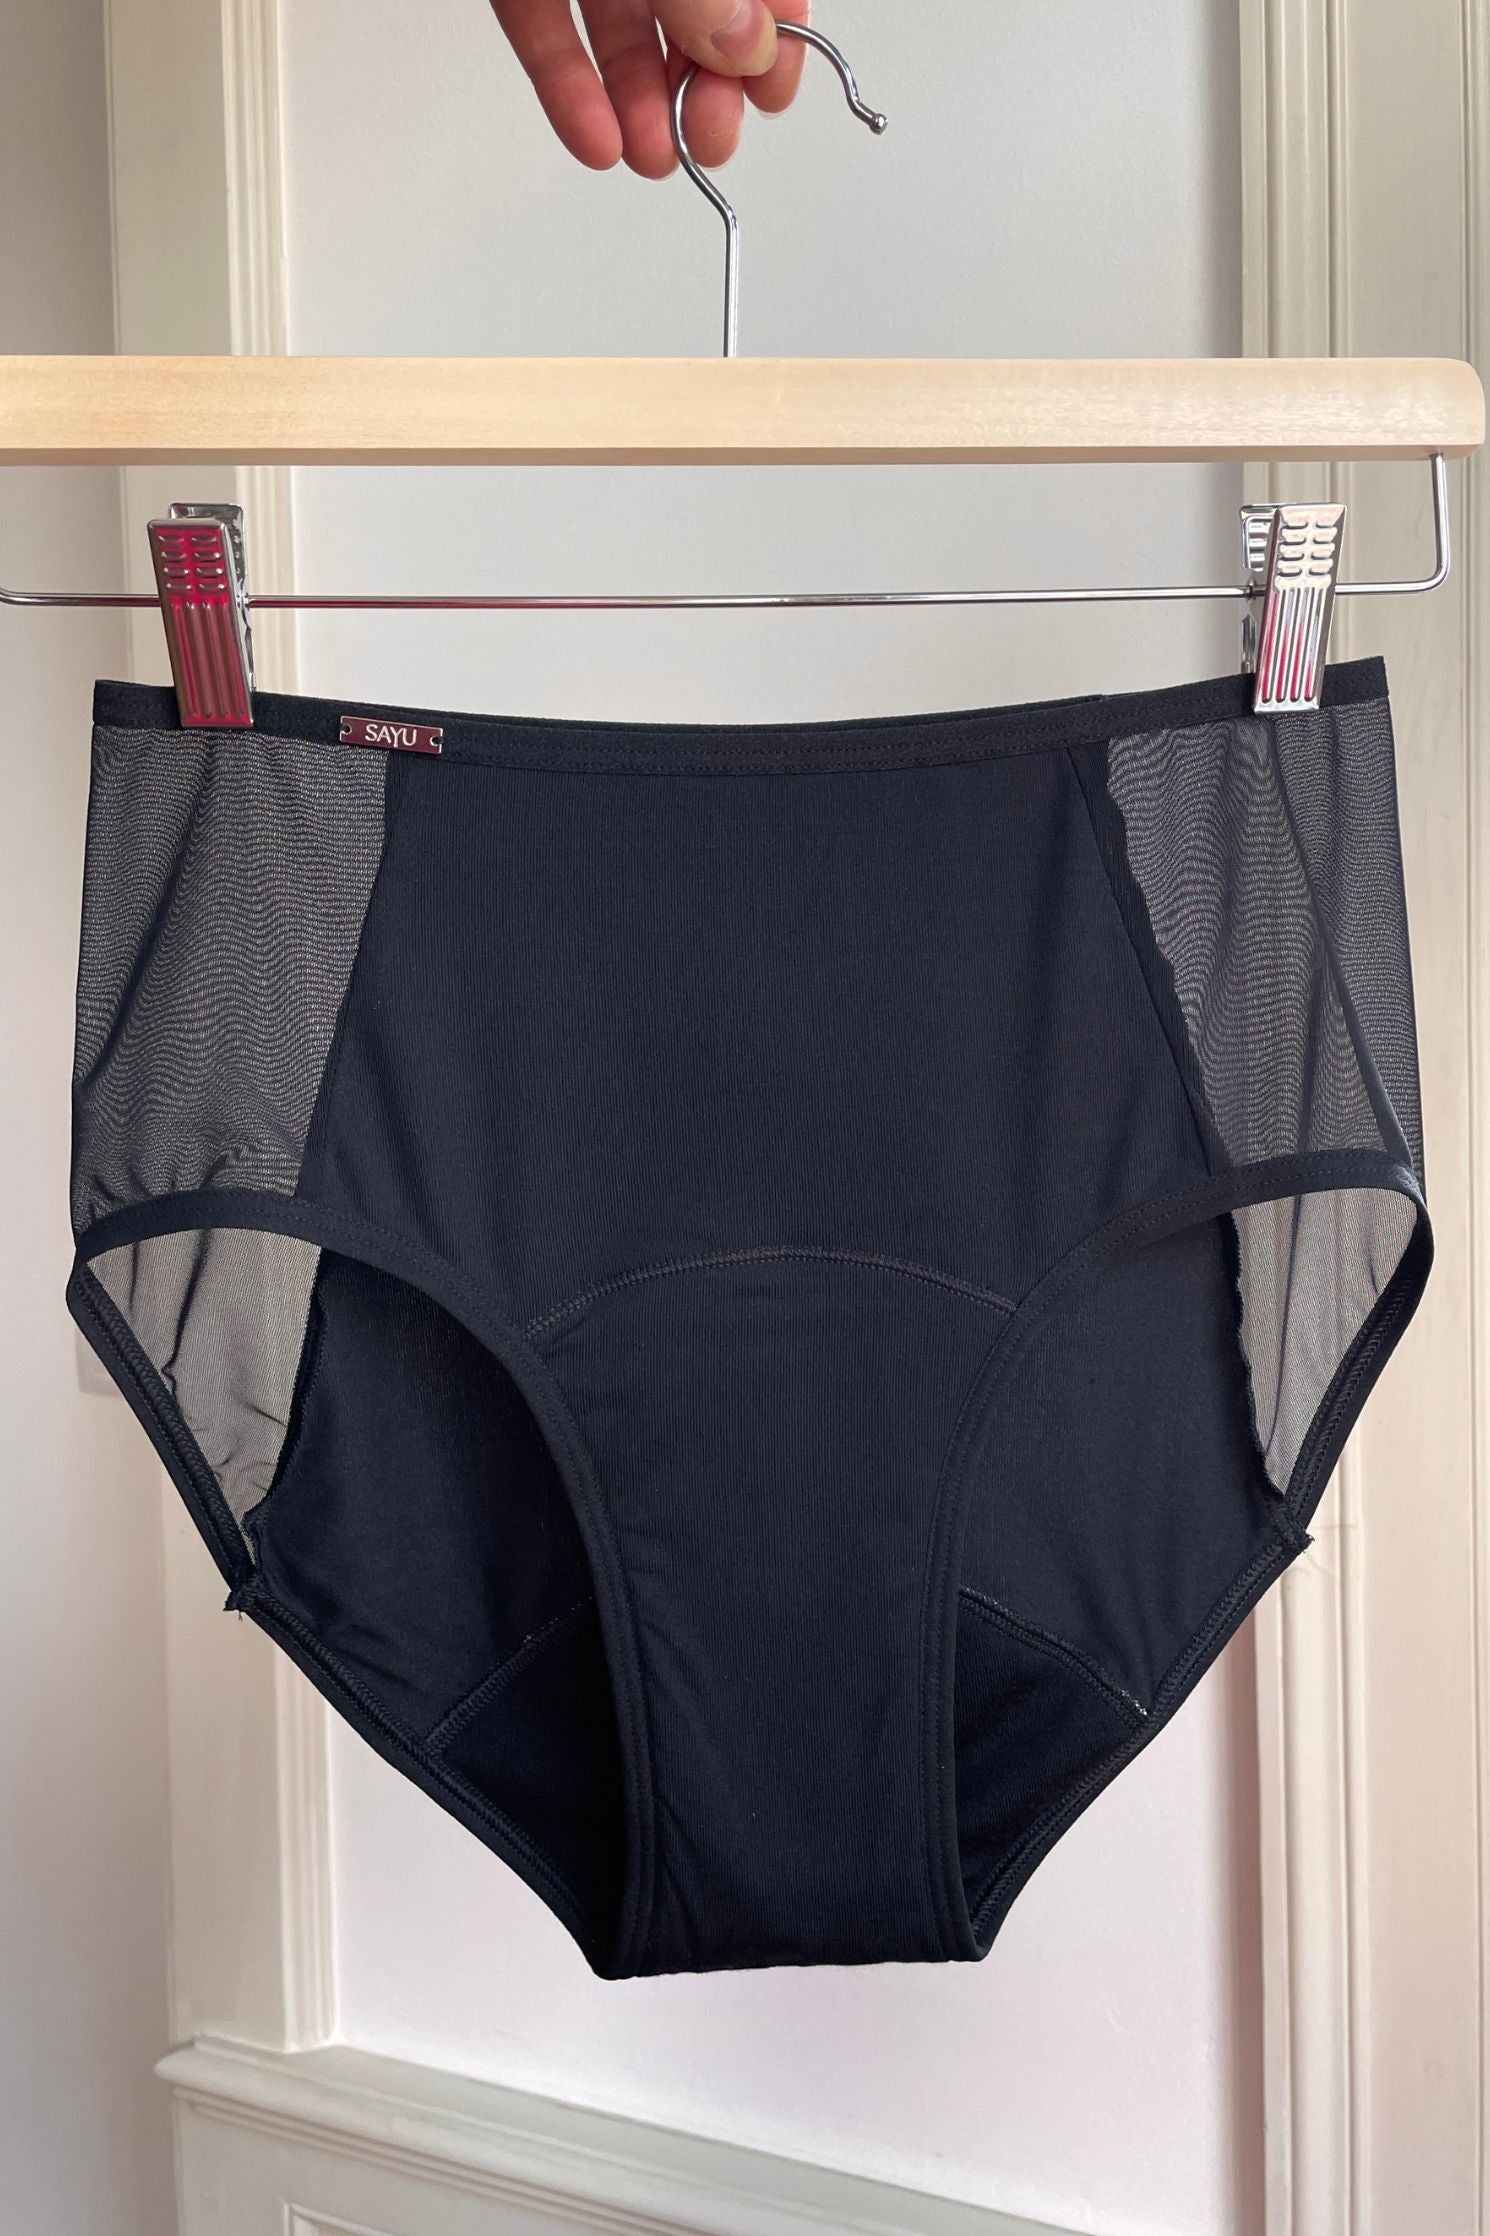 Produktová fotografie černých menstruačních kalhotek s transparentními boky